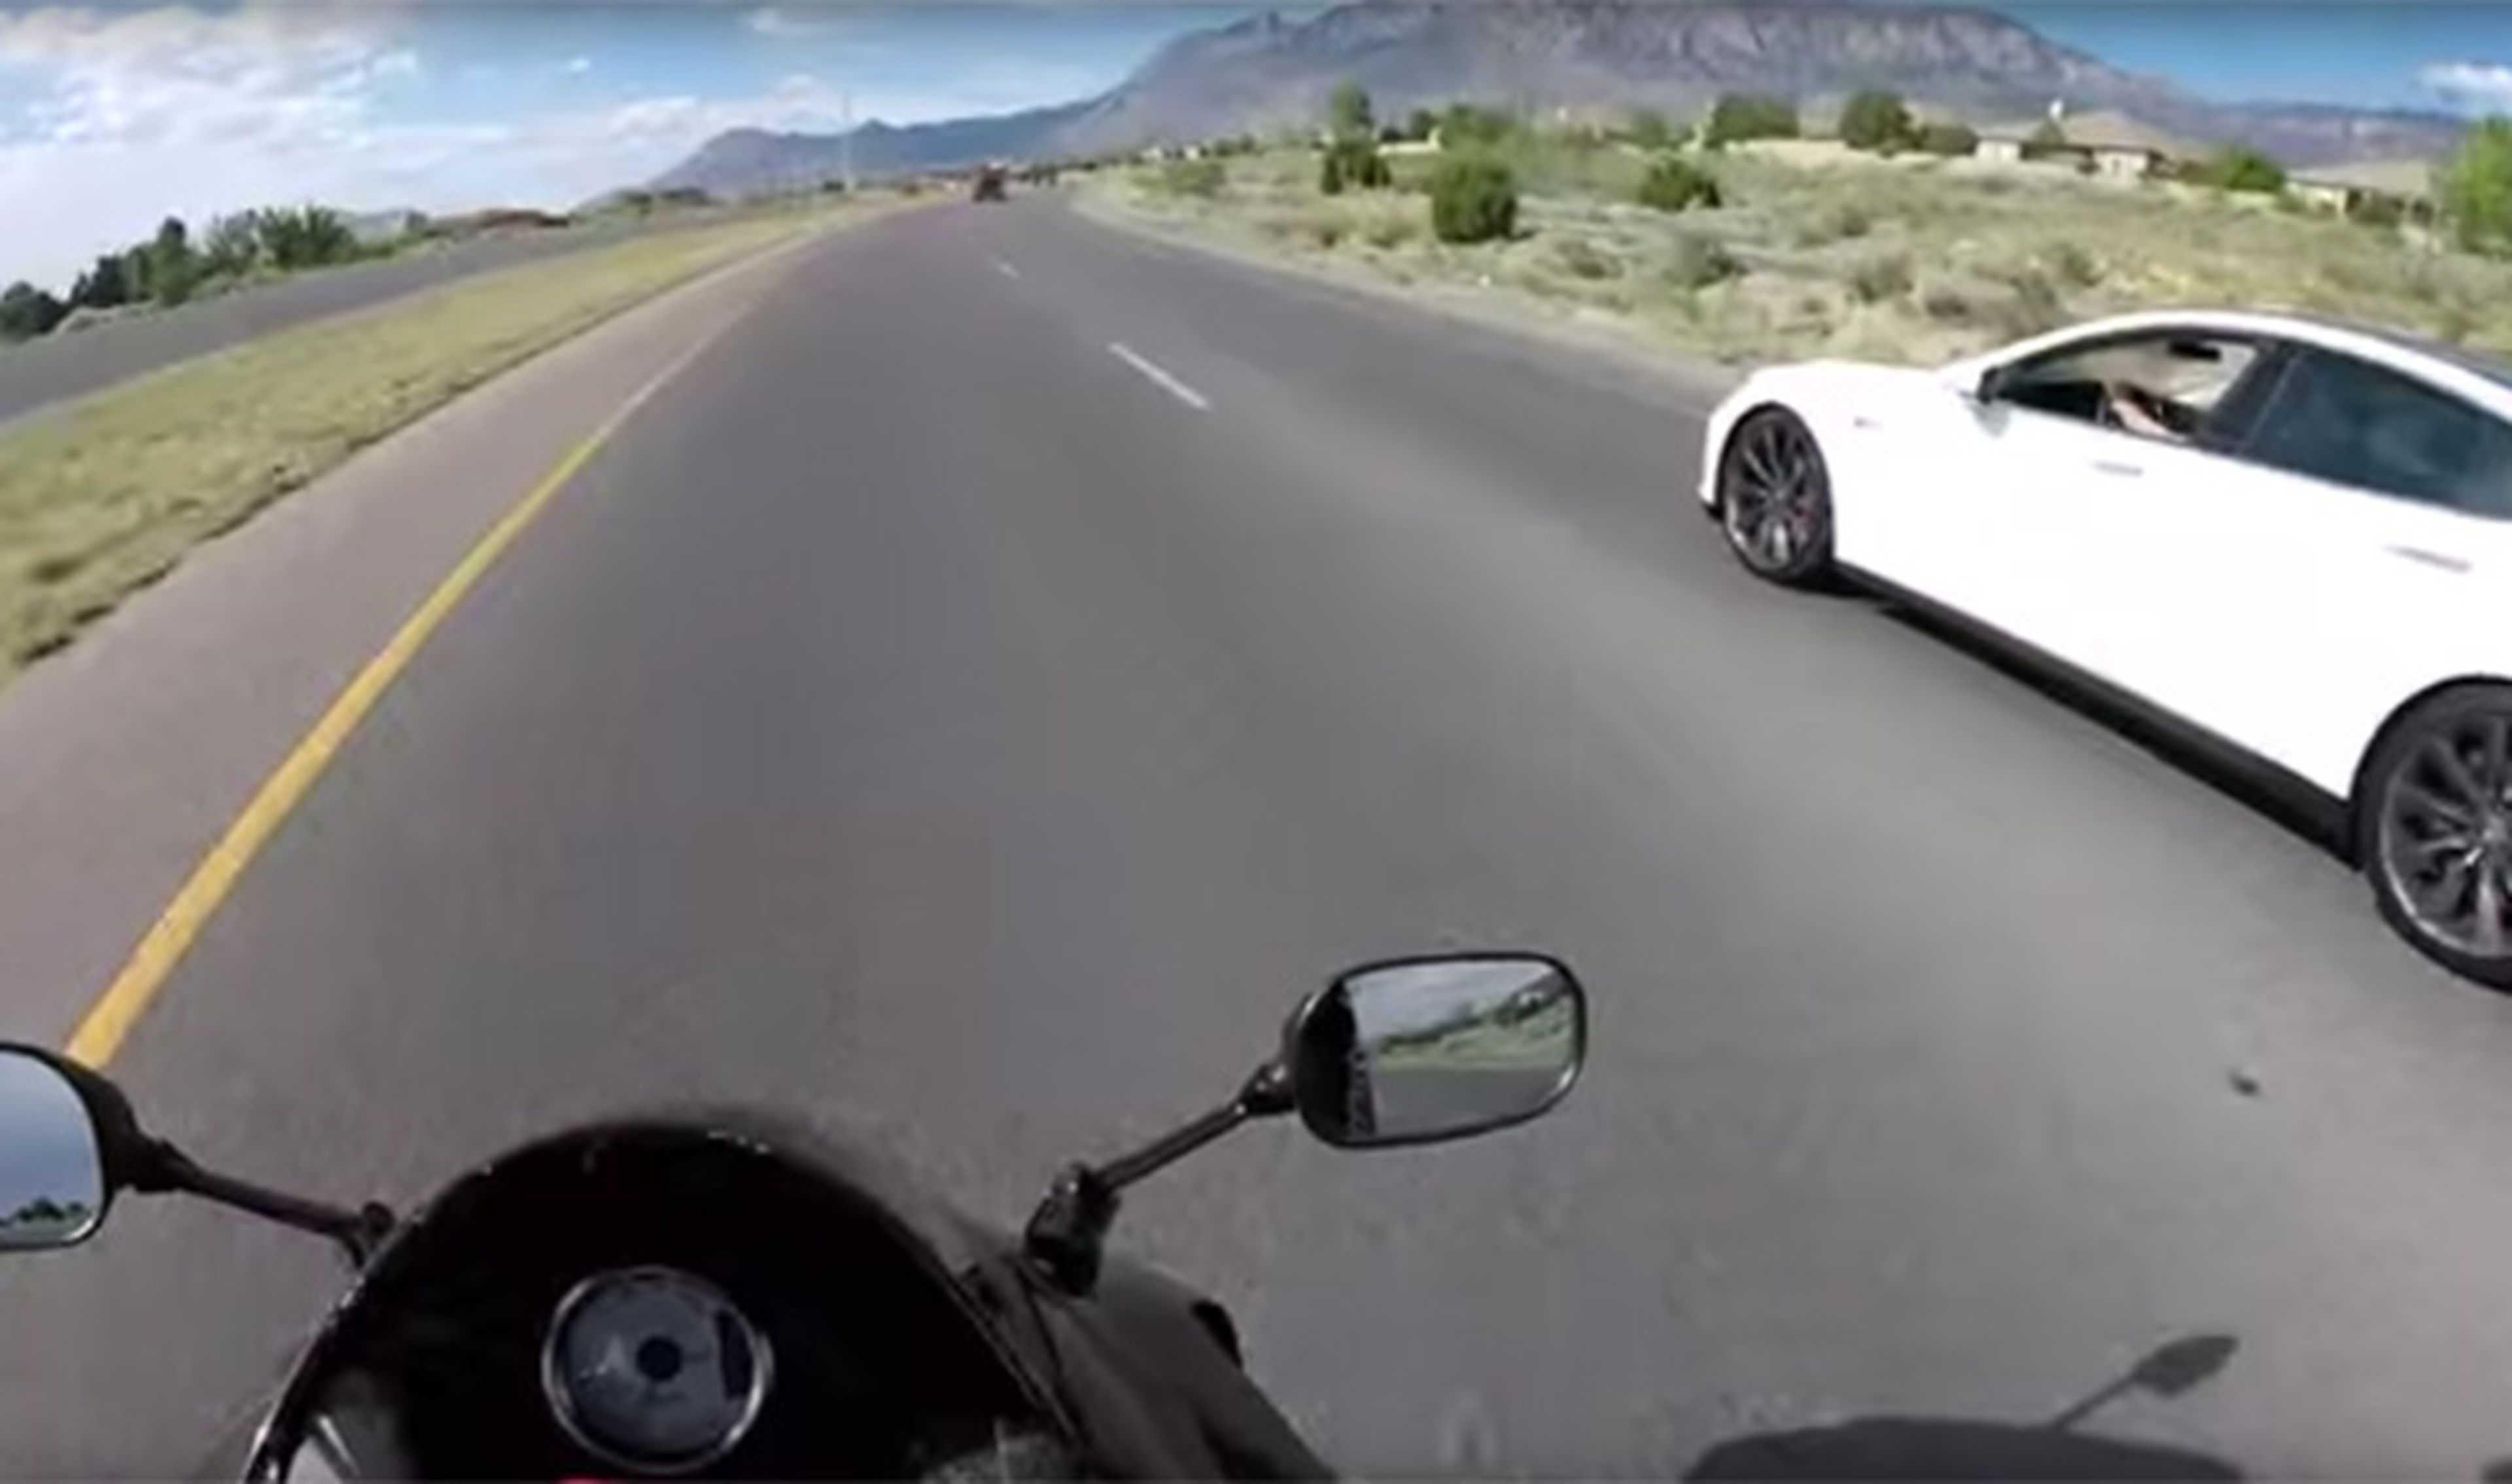 Vídeo: esta Kawasaki de 600 cc no puede con el Tesla